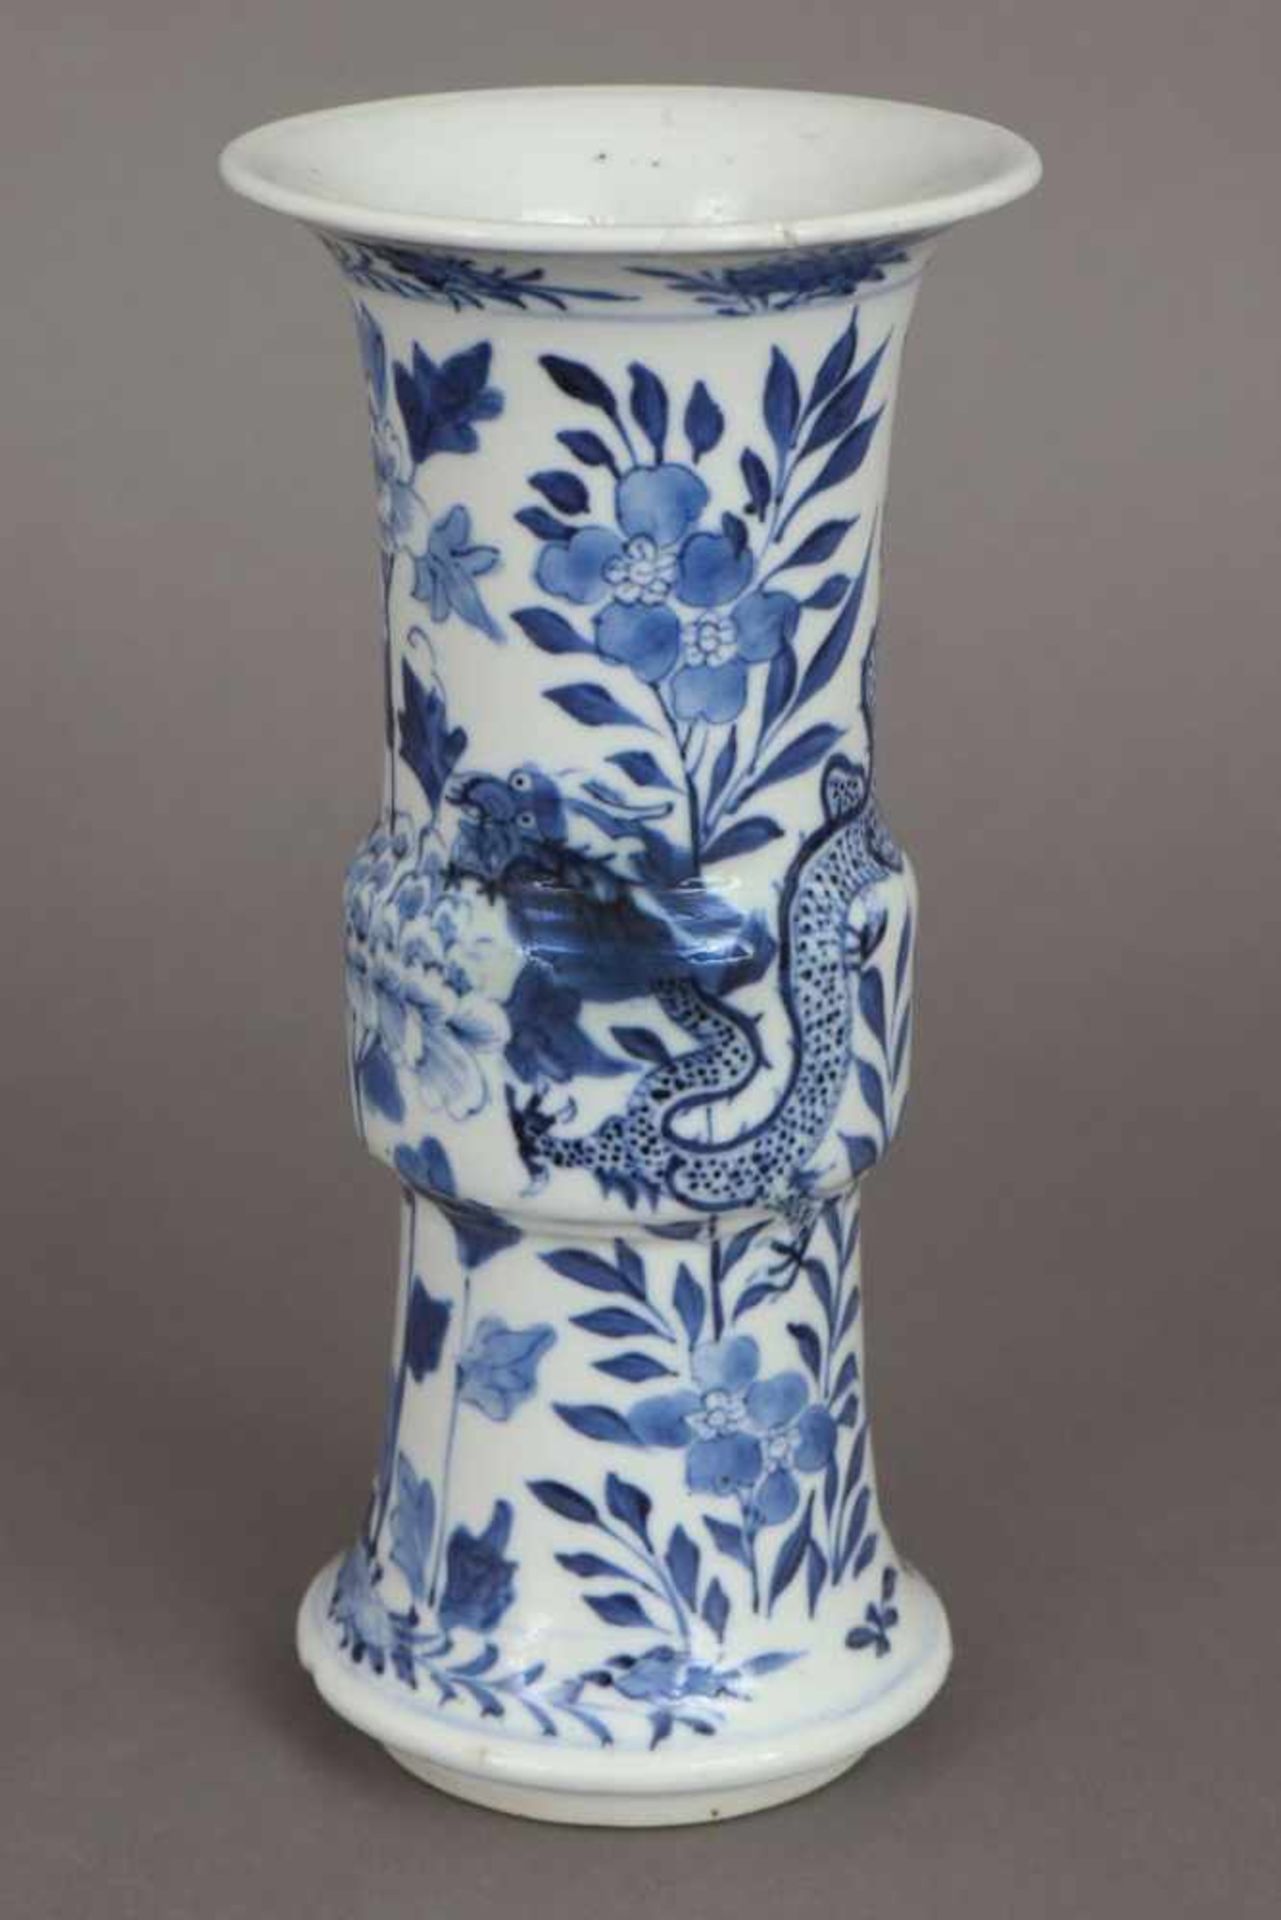 Chinesische Porzellanvase in Gu-Form Blaumalerei auf hellem Grund ¨Drache und Pflanzen¨,